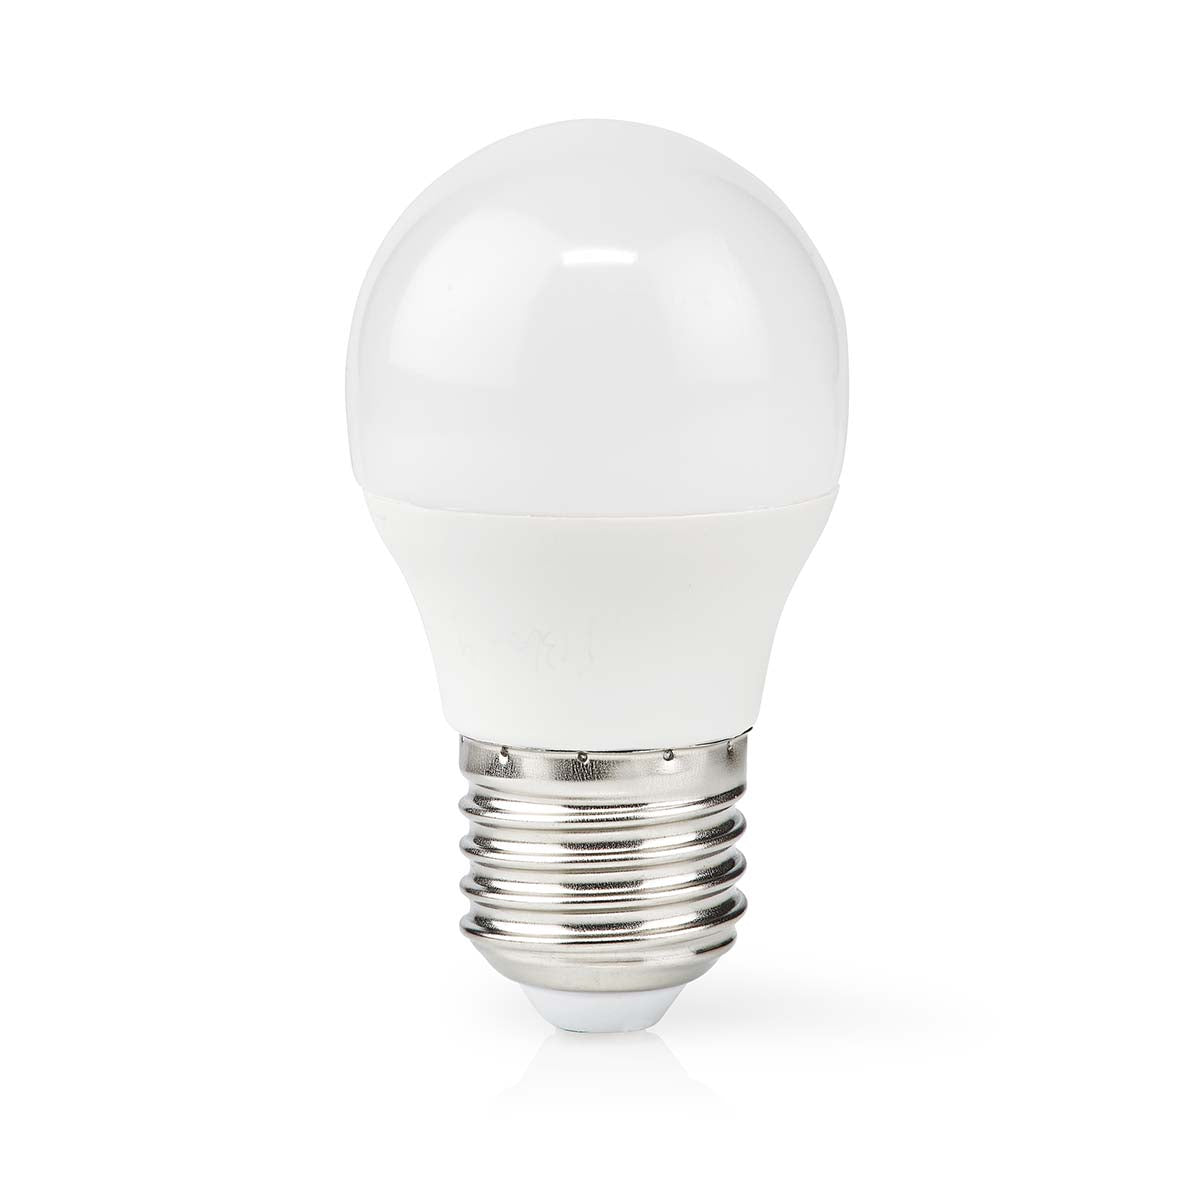 LED-Lampe E27 | G45 | 2.8 W | 250 lm | 2700 K | Warmweiss | Retro Style | Matte lampe | 1 Stück